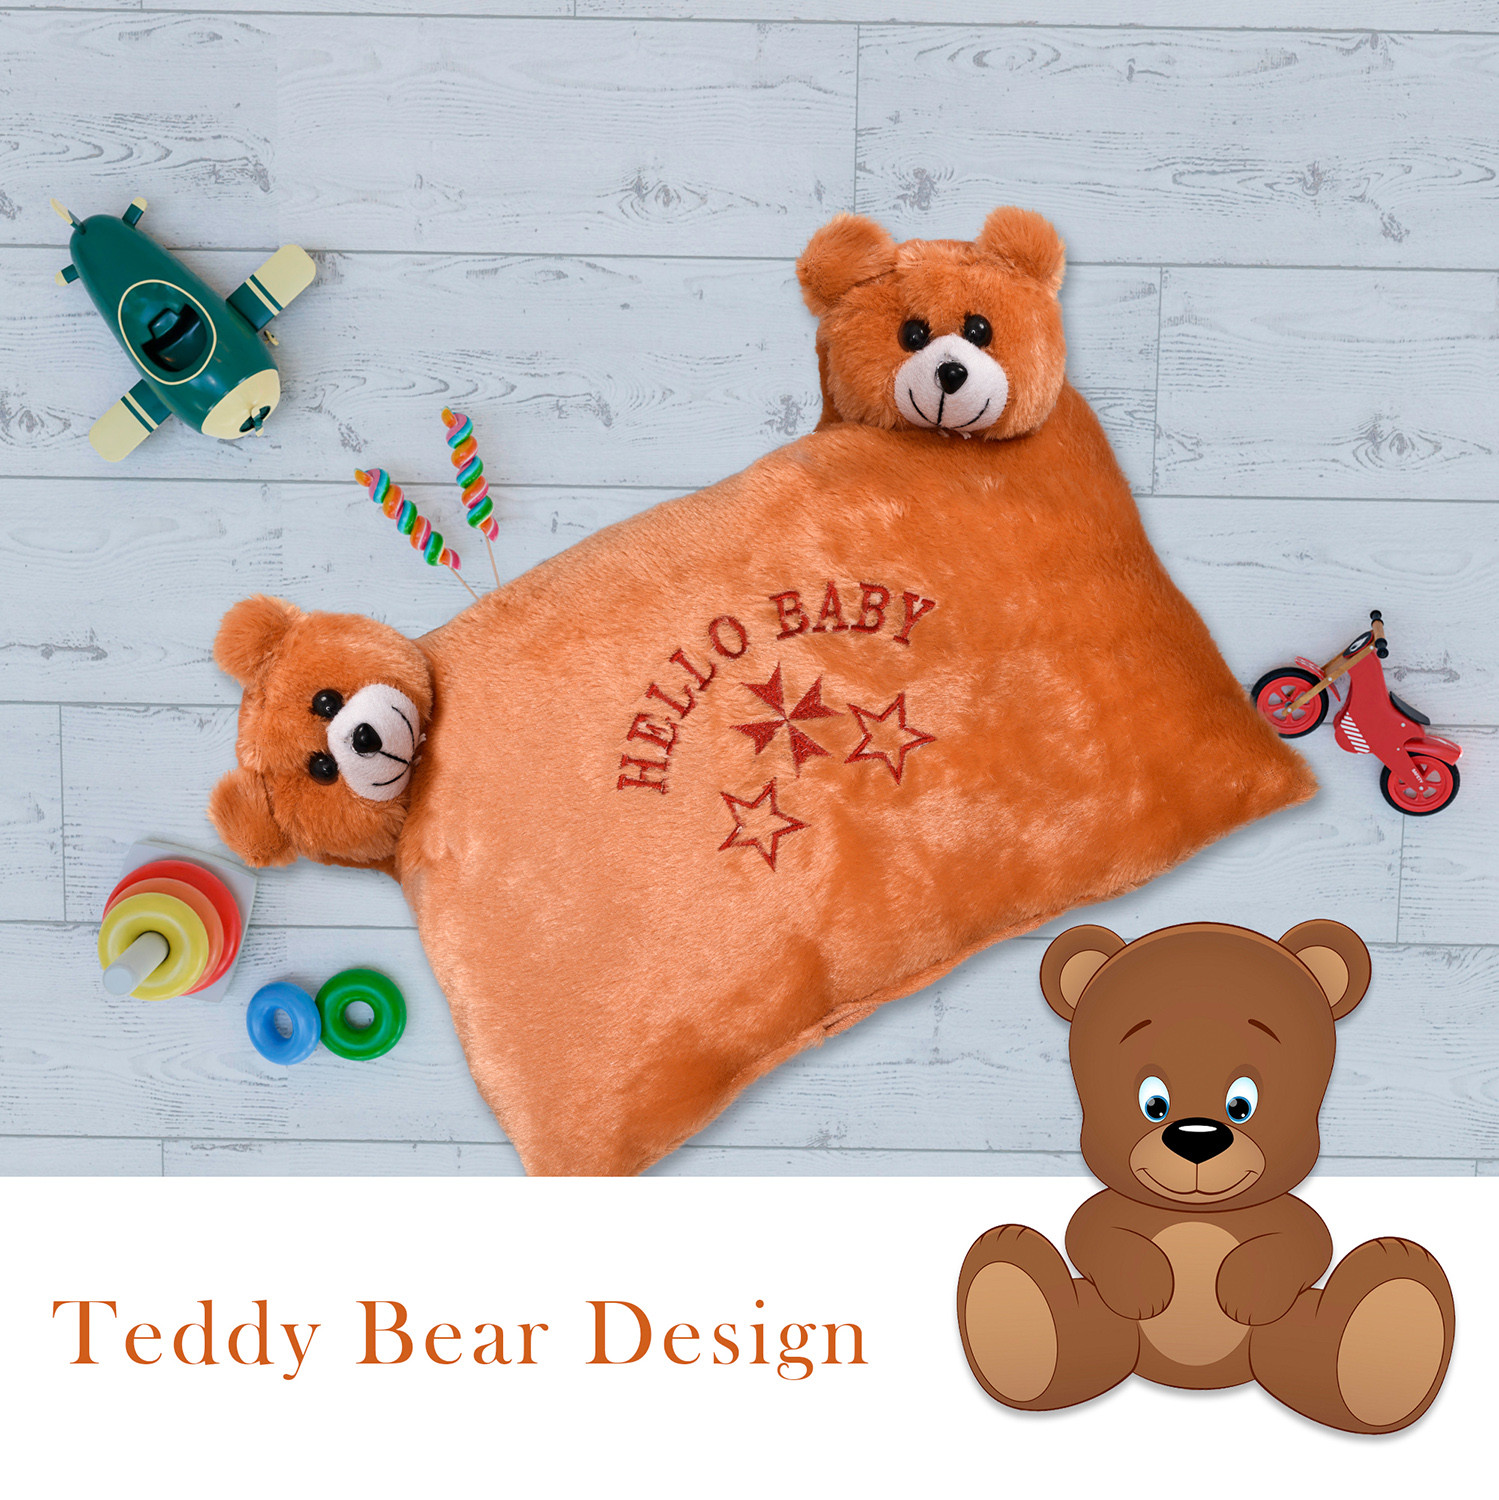 Kuber Industries Hello Teddy Design Baby Pillow|Velvet Super soft Kids Pillow For Sleeping & Travel,12 x 18 Inch,(Orange)